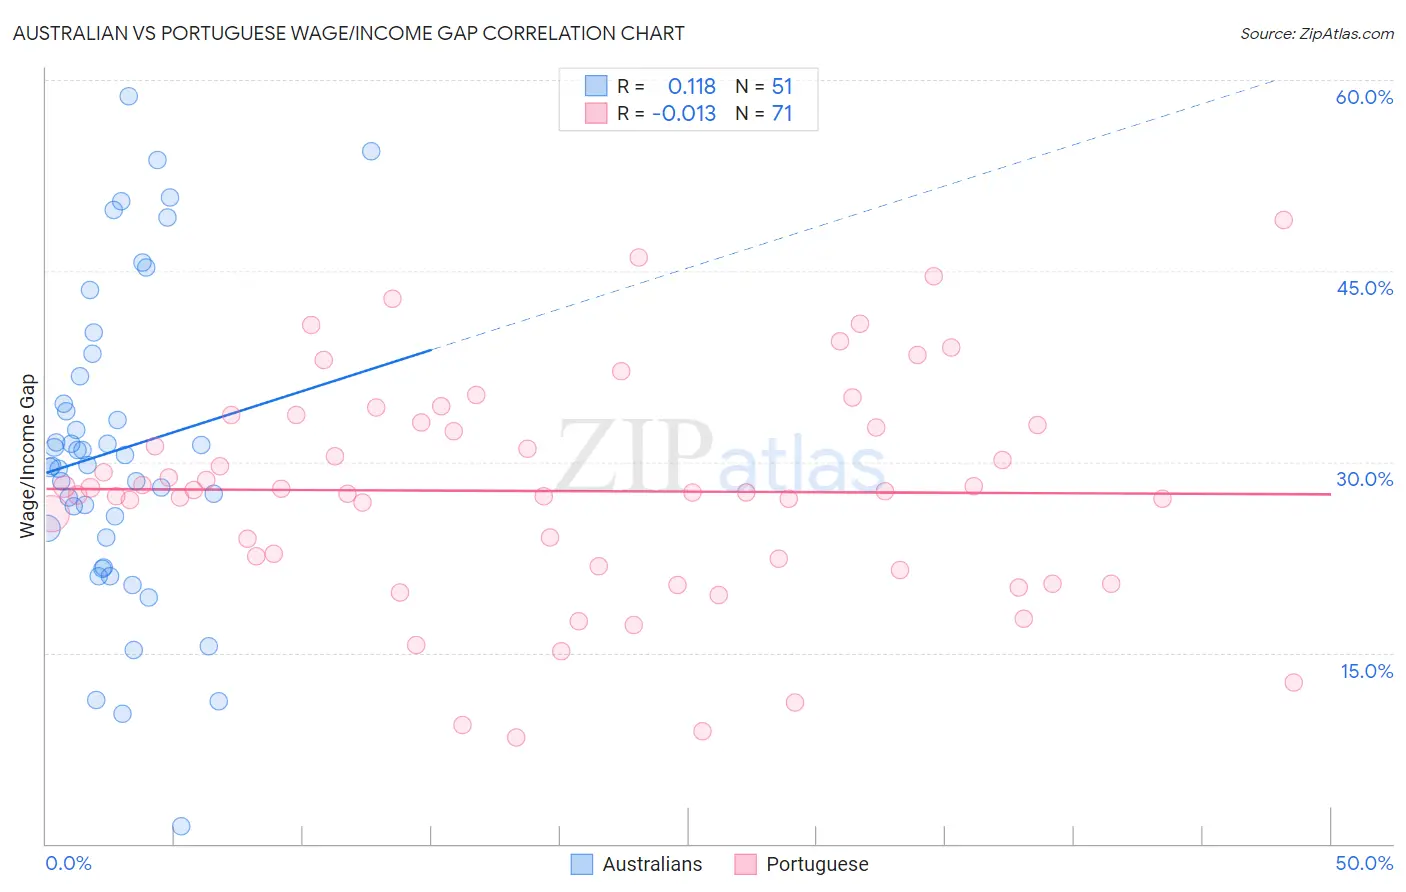 Australian vs Portuguese Wage/Income Gap